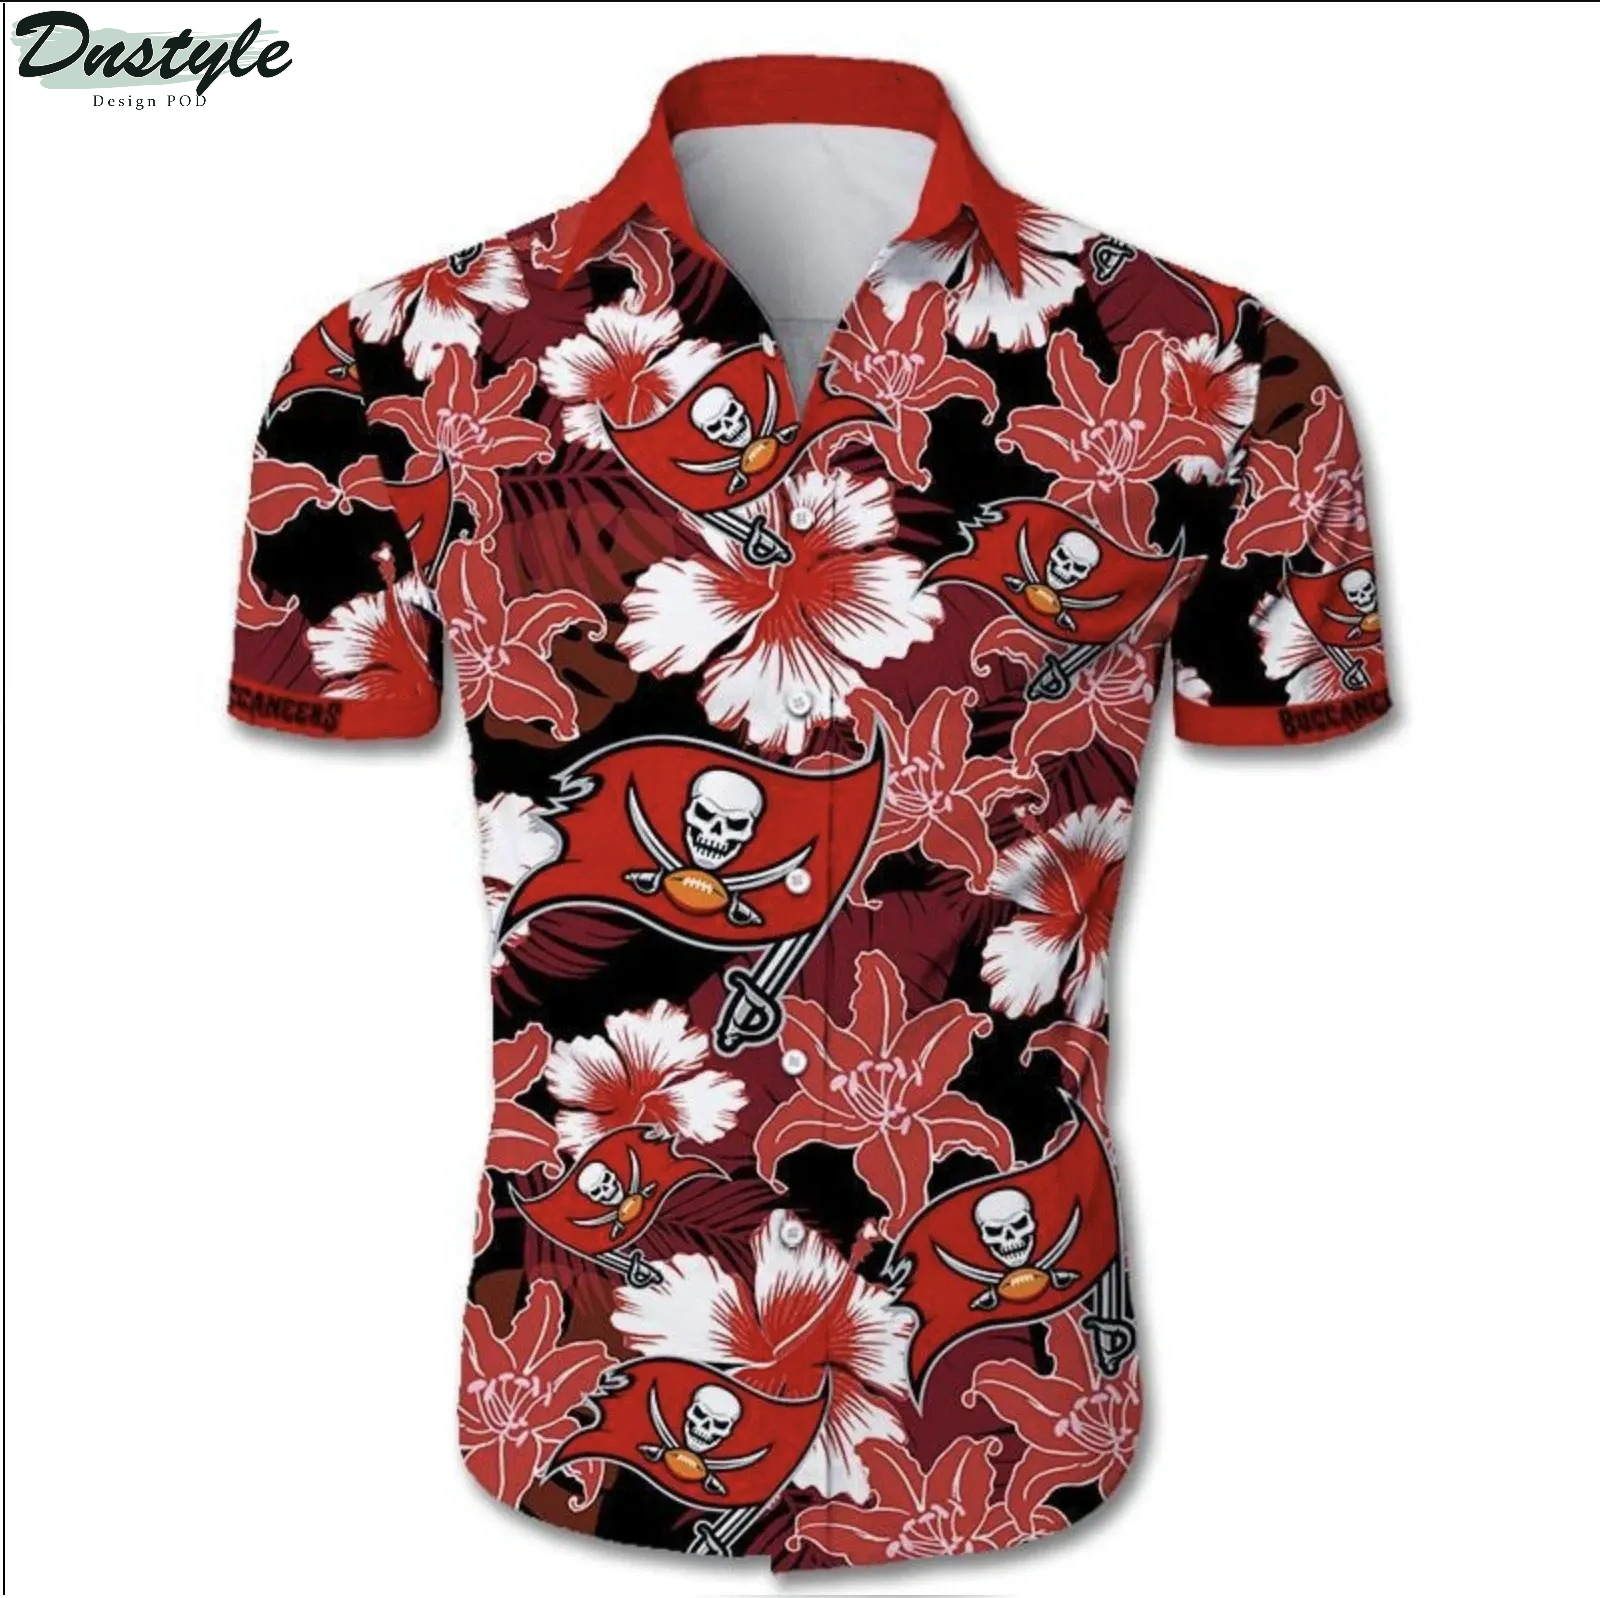 Tampa Bay Buccaneers NFL Tropical Hawaiian Shirt